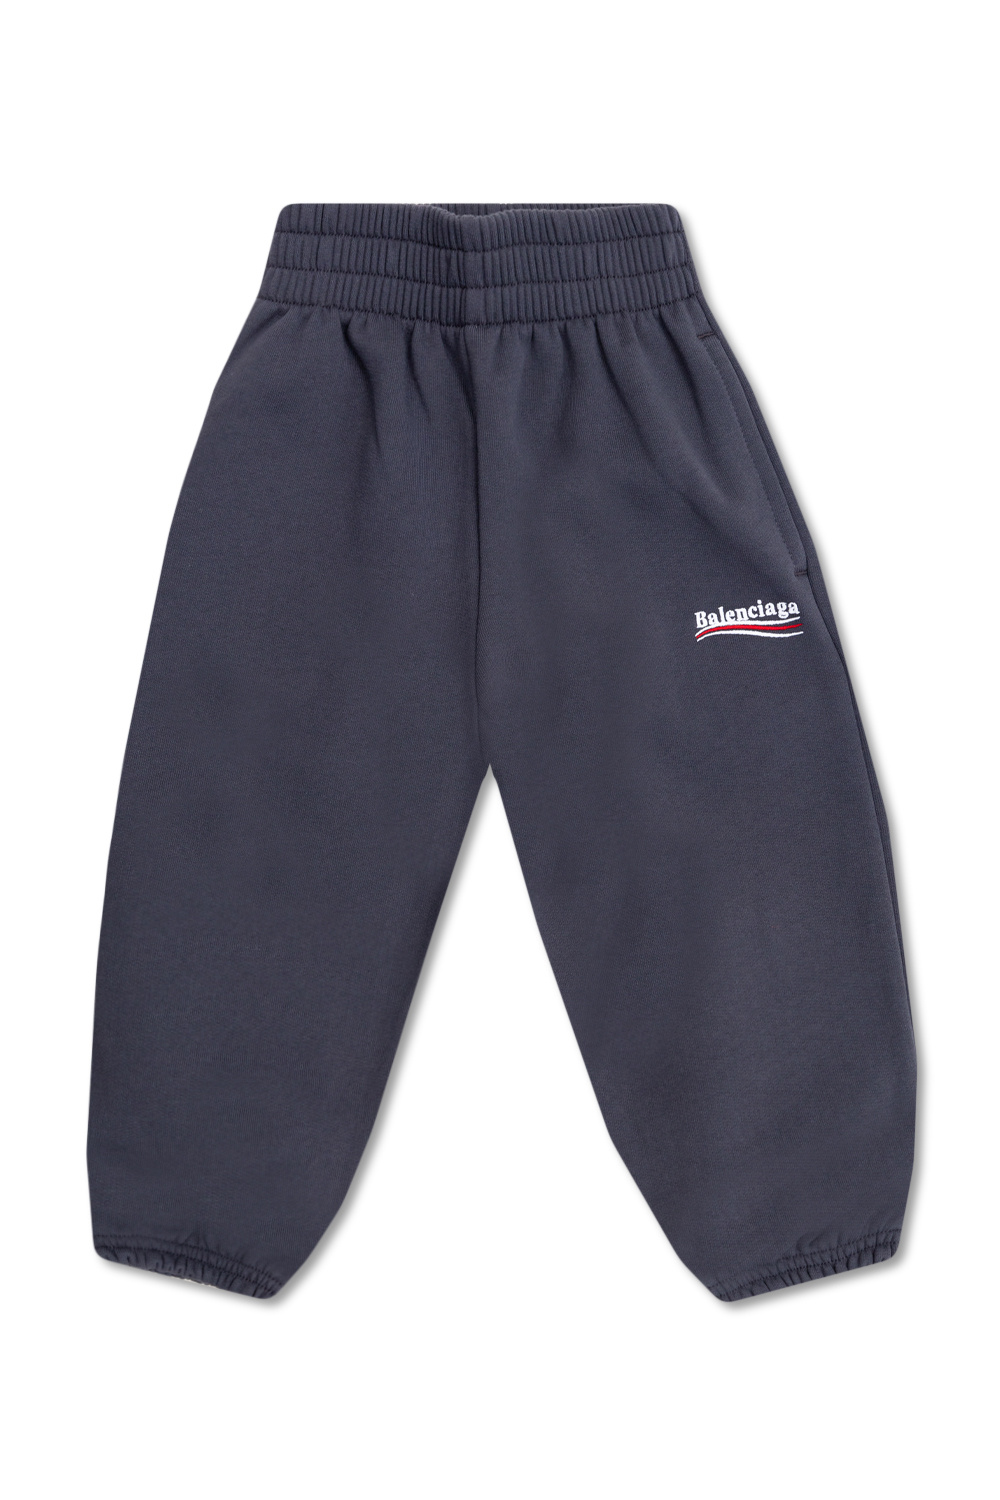 Balenciaga Kids Mens shorts adidas Originals C Short HR3323